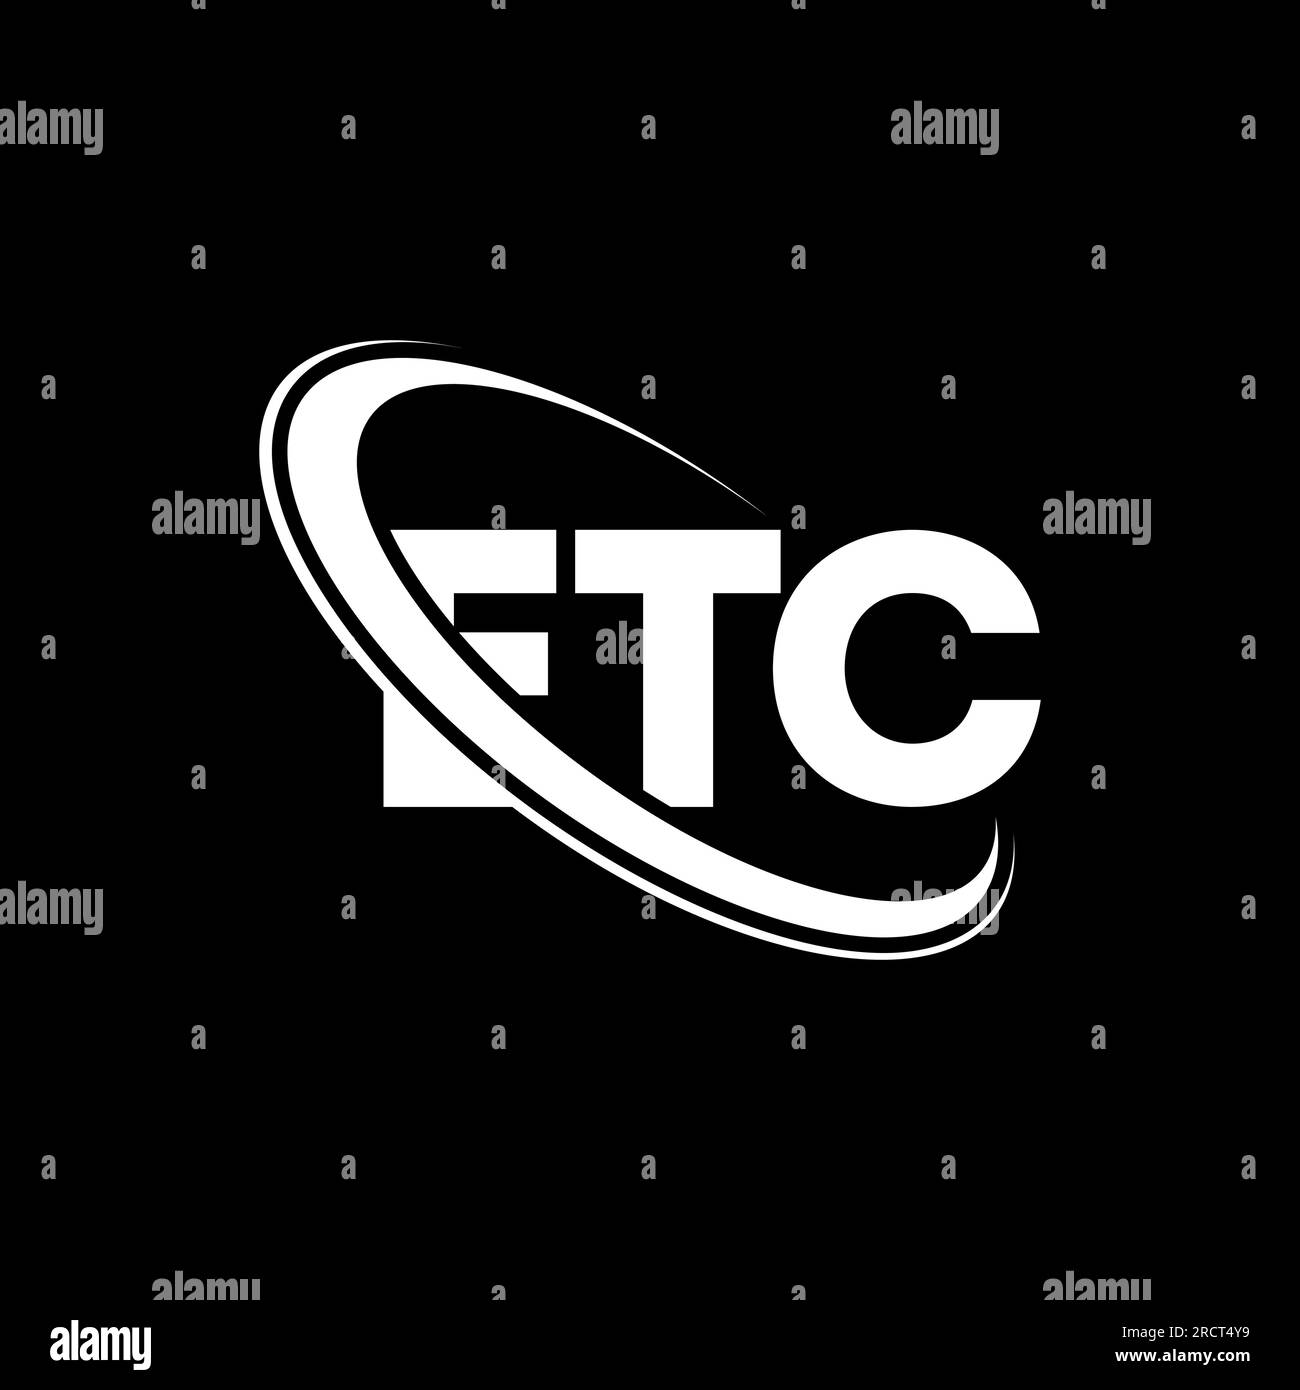 ETC-Logo. ETC-Buchstabe. LOGO mit ETC-Buchstaben. Initialen USW. Logo, verbunden mit einem Kreis und einem Monogramm-Logo in Großbuchstaben. ETC-Typografie für Technologie, Unternehmen Stock Vektor